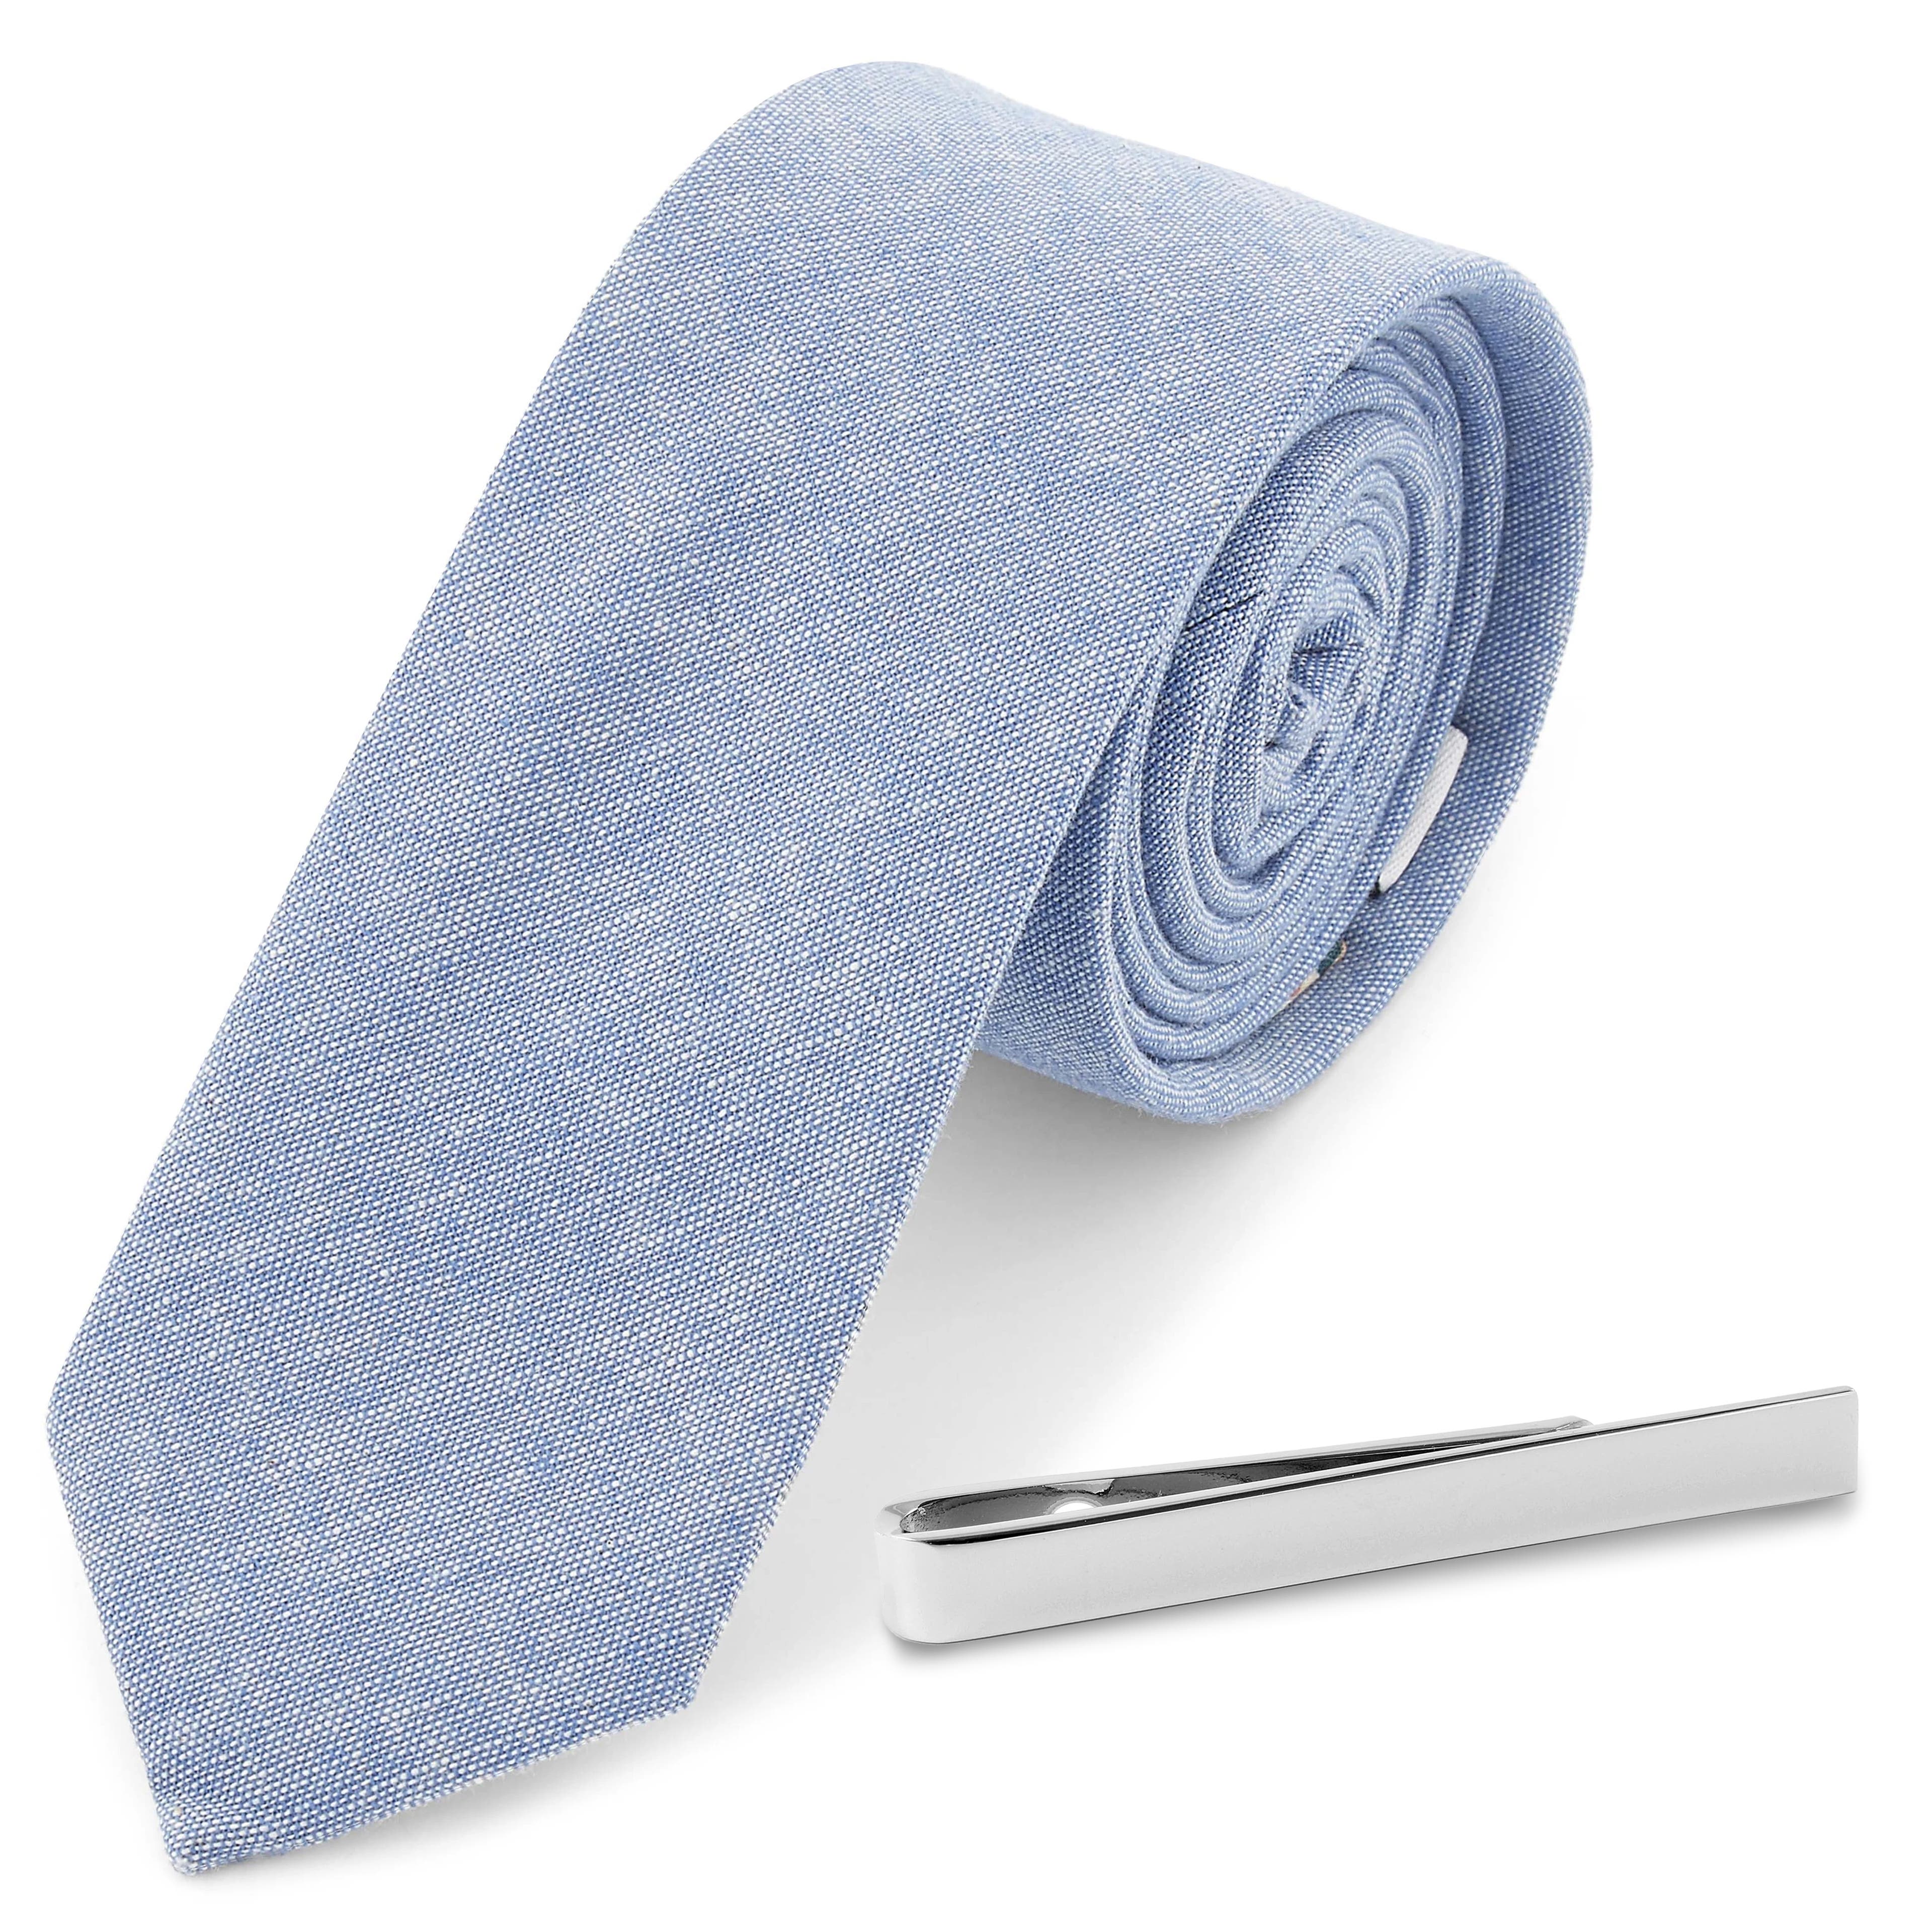 Set con cravatta azzurra e fermacravatta color argento